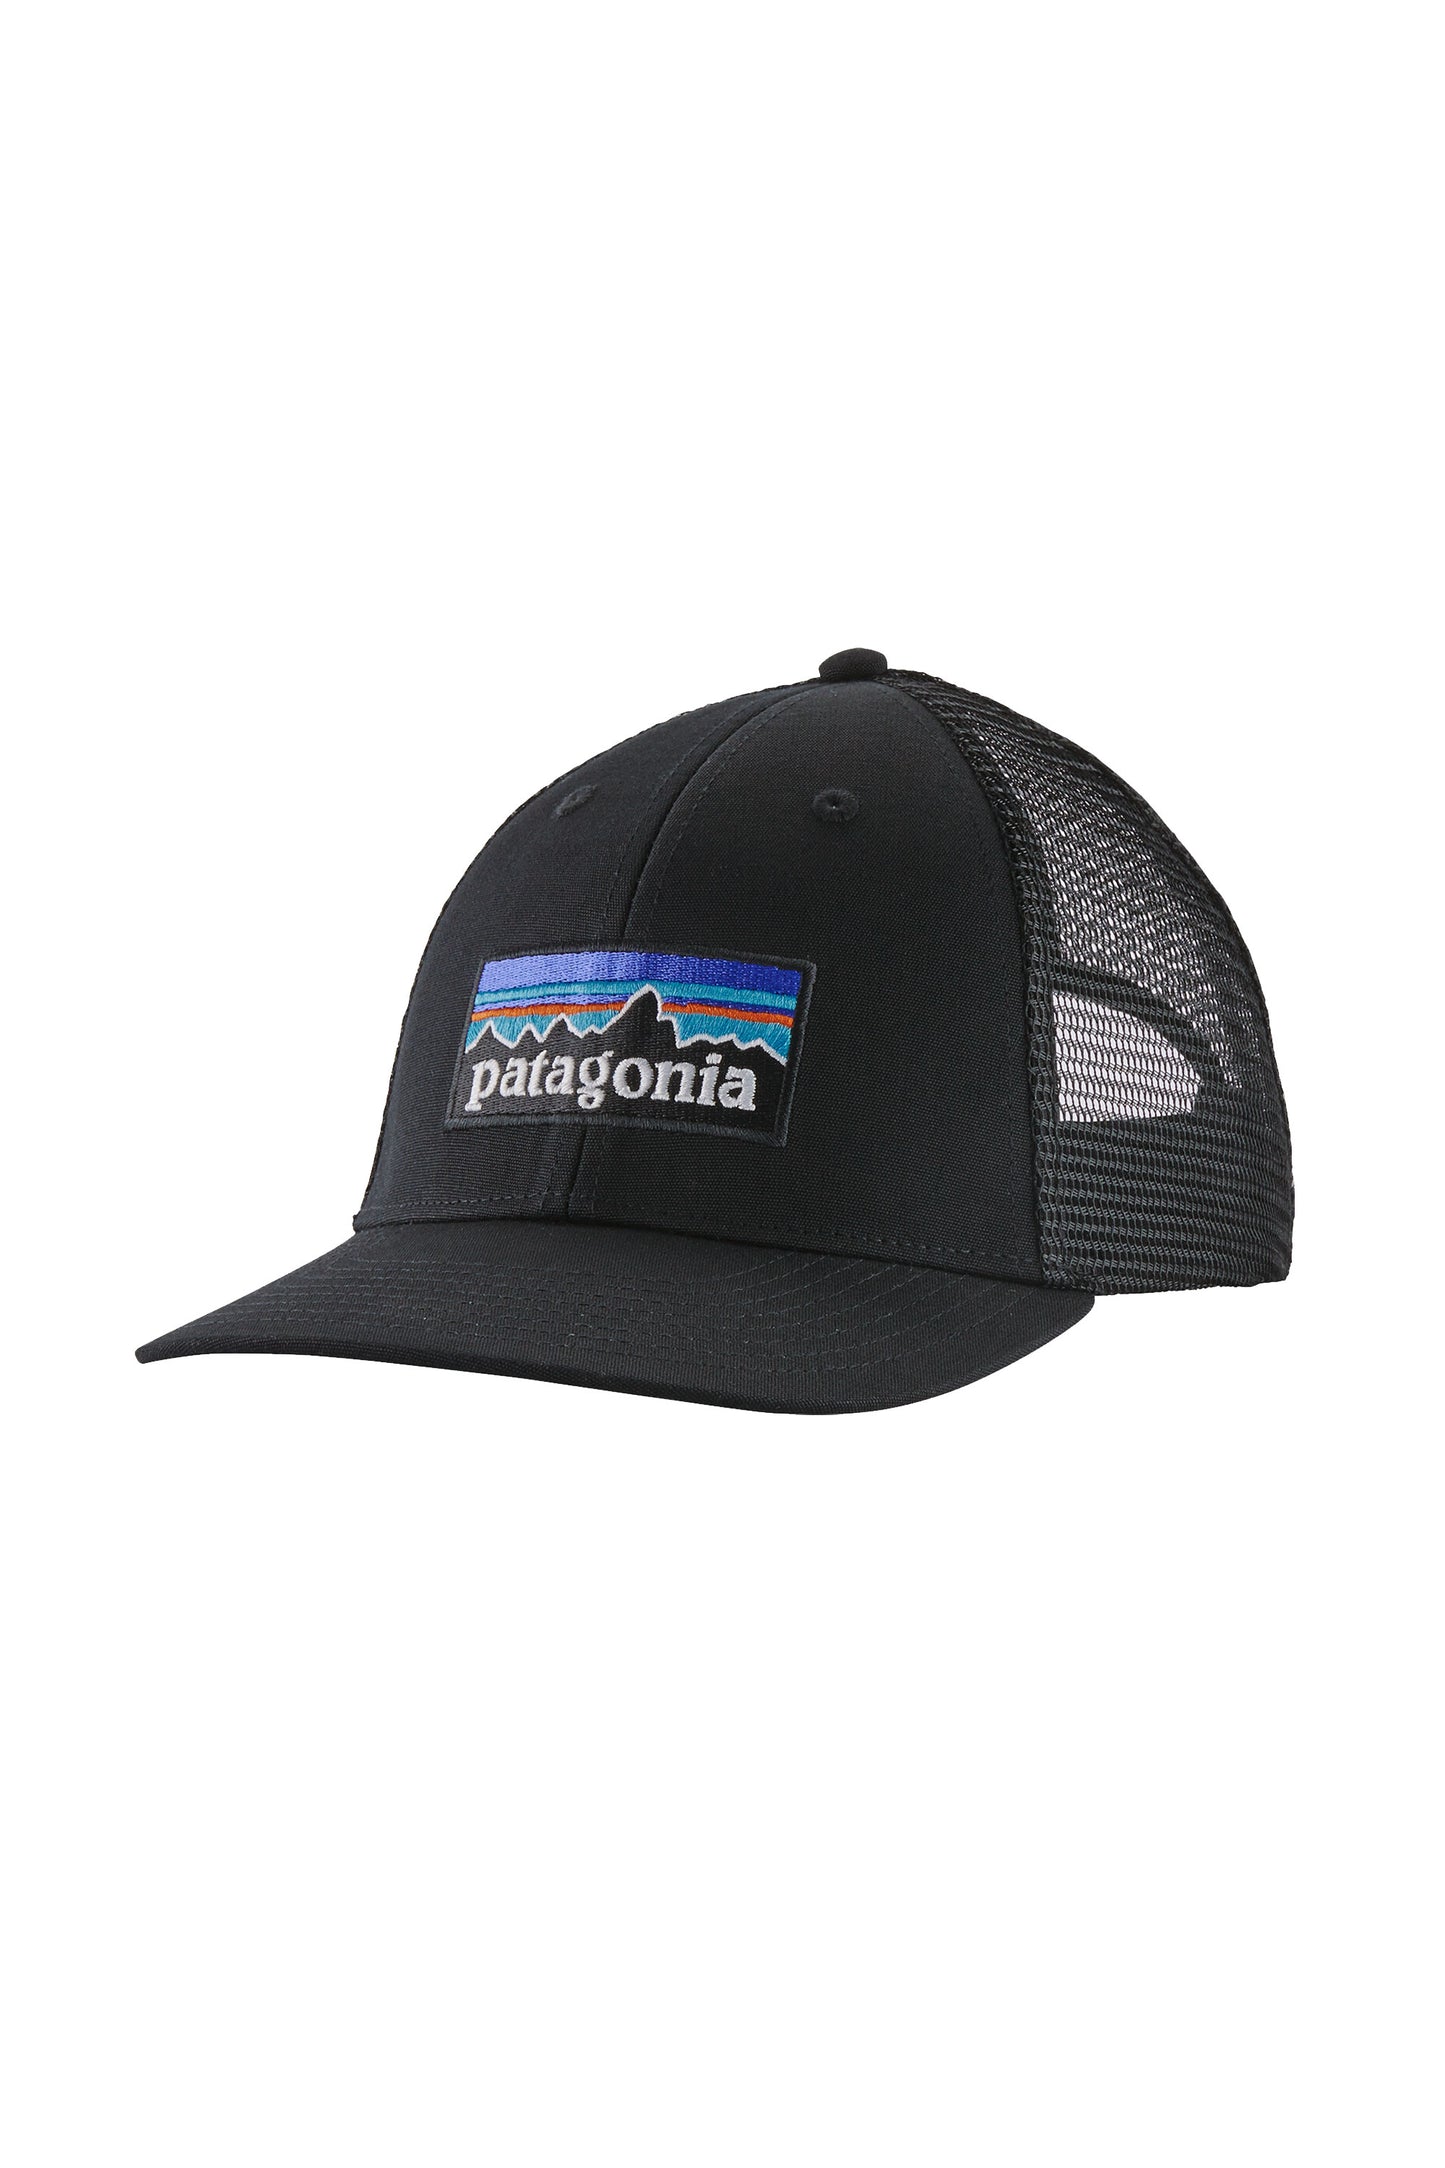 Pukas-Surf-Shop-patagonia-trucker-hat-p-6-logo-lopro-black